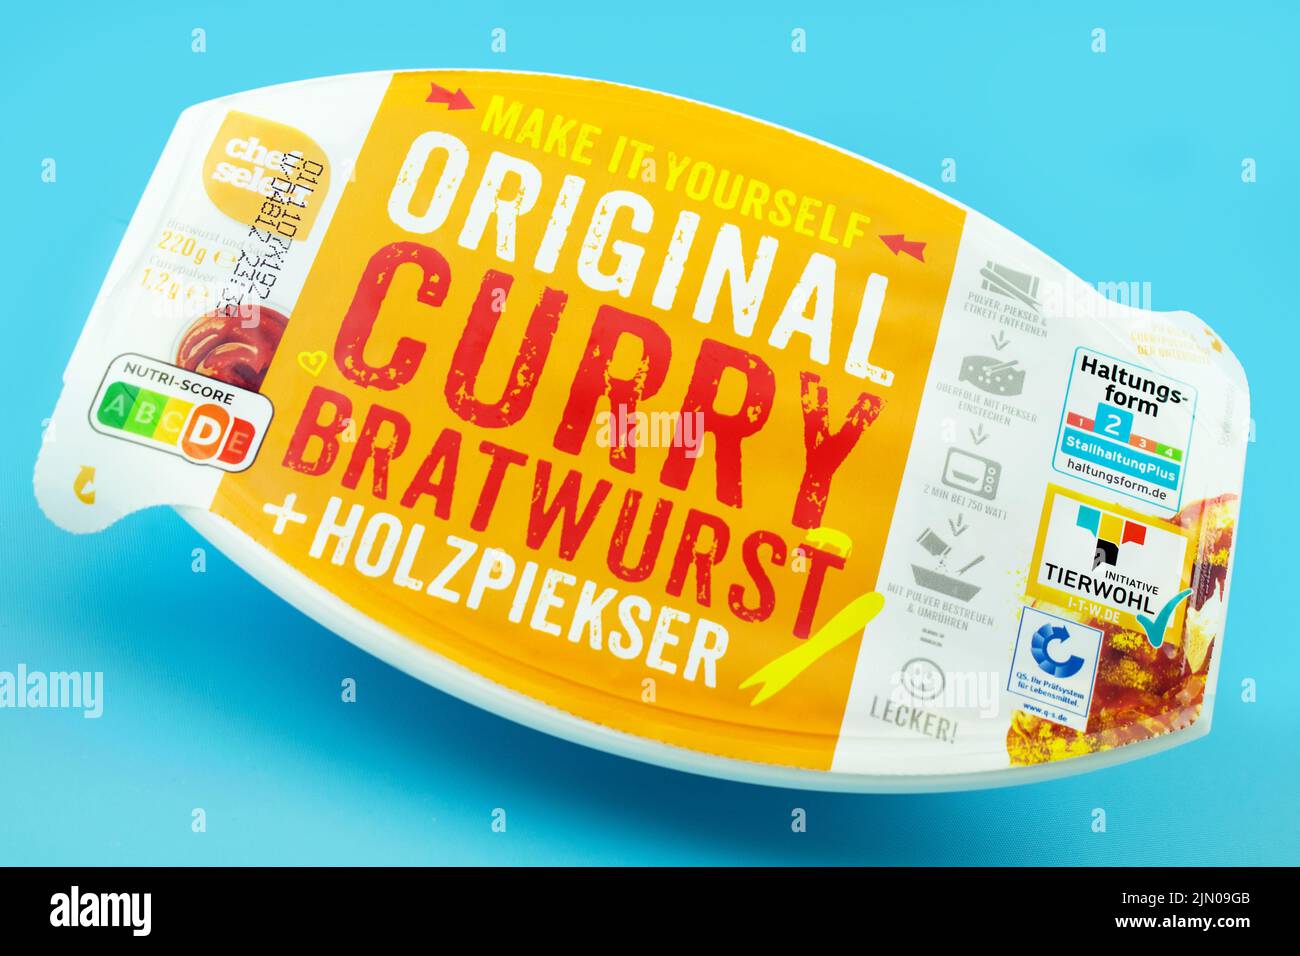 Fertiggericht Currywurst mit Sauce Original von Chef Select mit Tierwohl Label und Nutri-Score Foto de stock